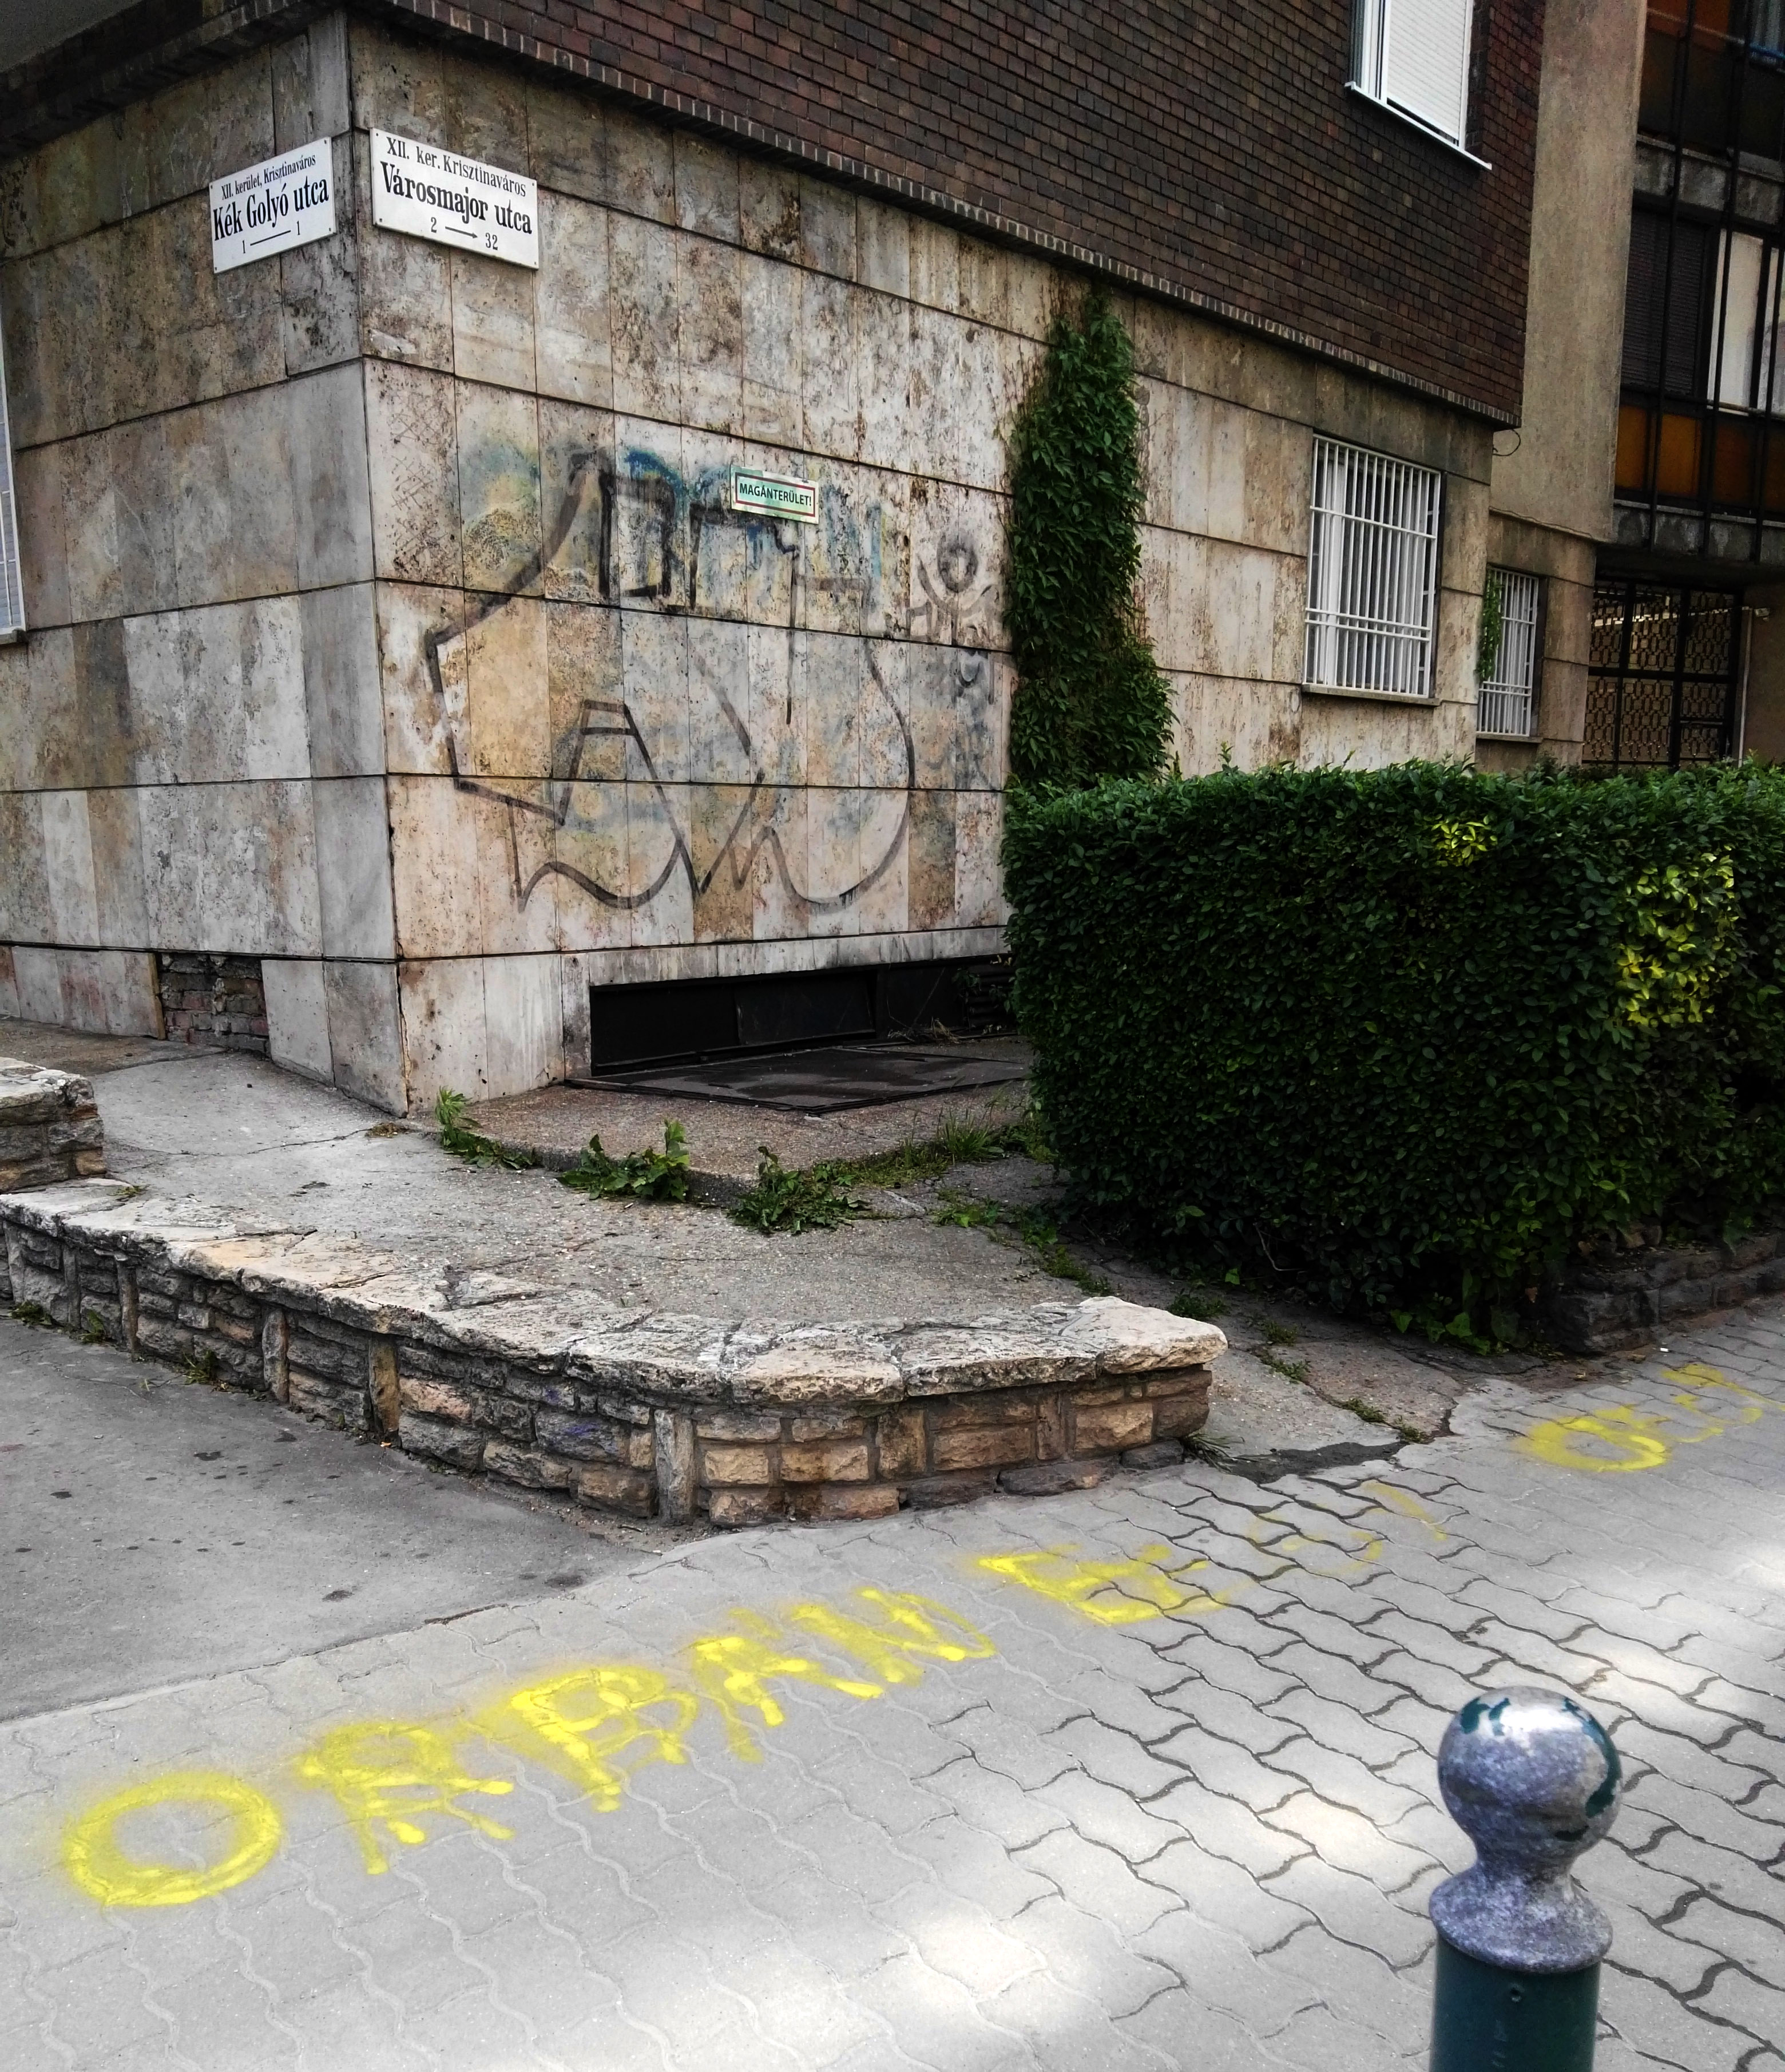 Blitzkriegnek indult, elkeseredett állóháborúvá fajult a Városmajor utcai graffitis küzdelem